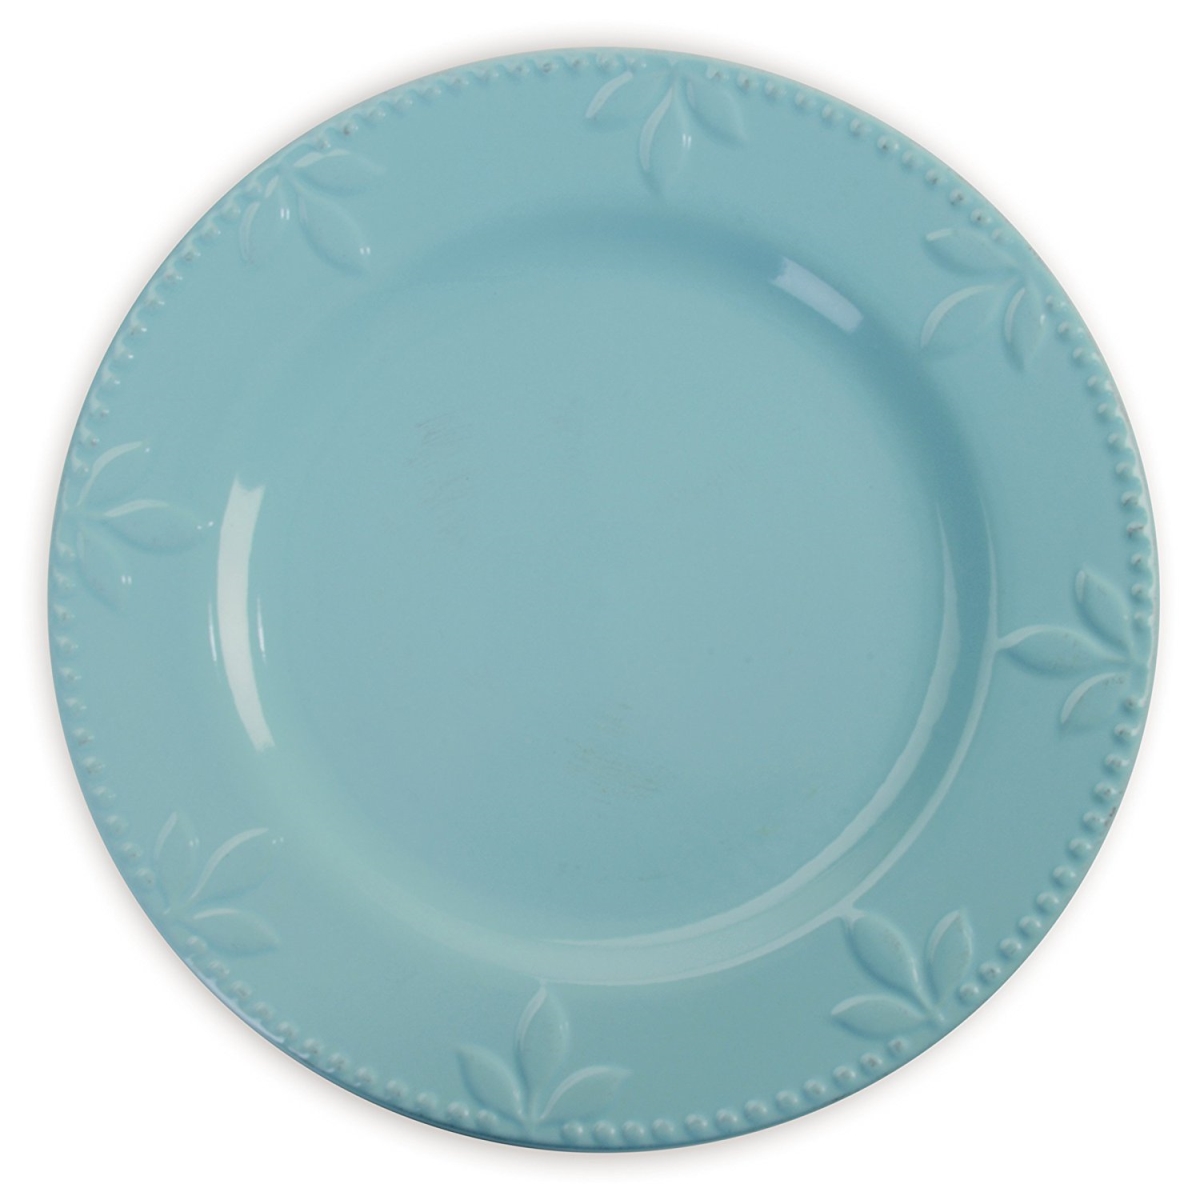 70741 Sorrento Aqua Dinner Plates, Set Of 4